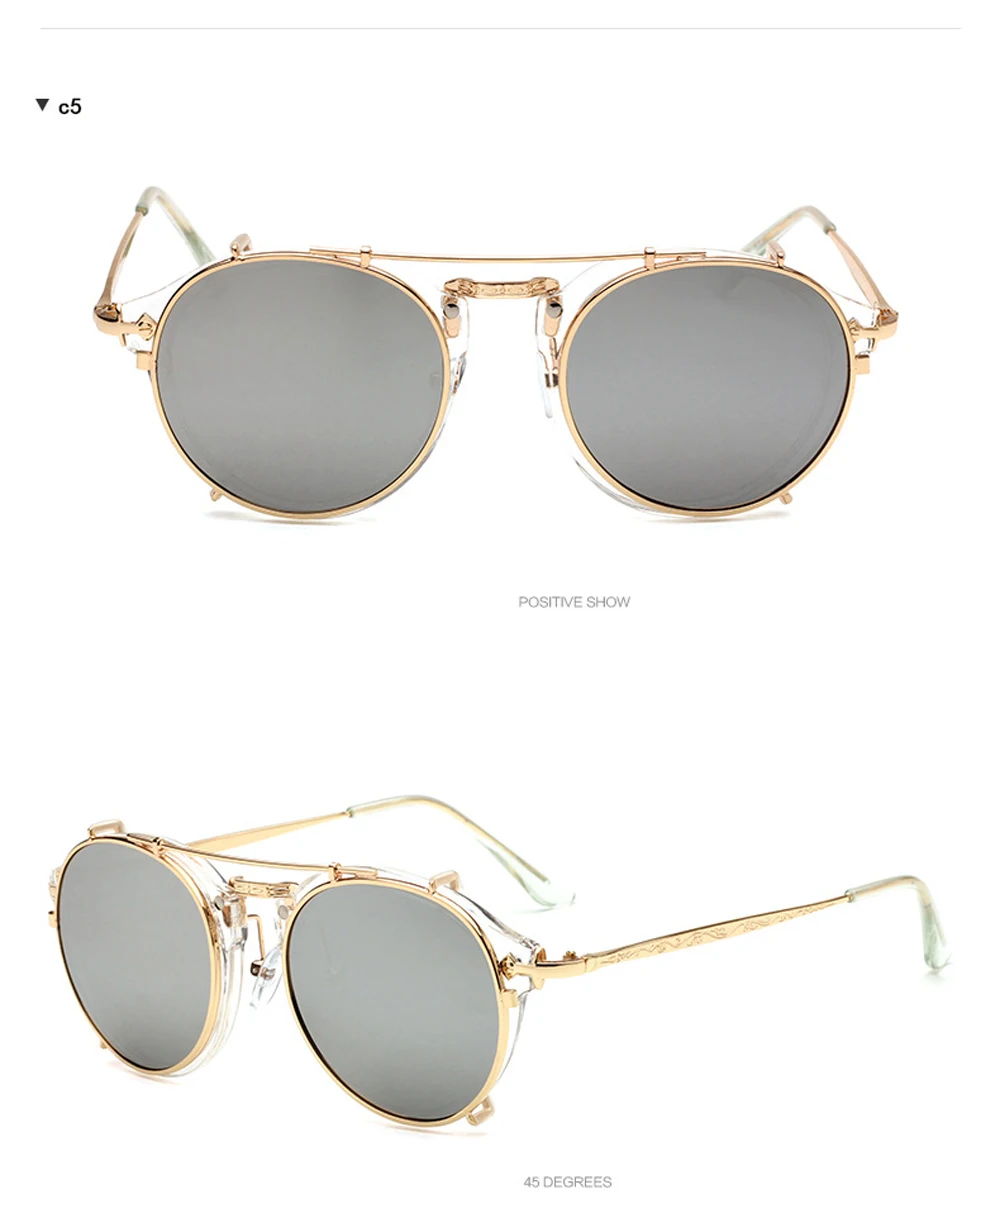 Мужские солнцезащитные очки на застежке в стиле стимпанк, фирменный дизайн, женские модные очки, Ретро стиль, модные солнцезащитные очки, UV400